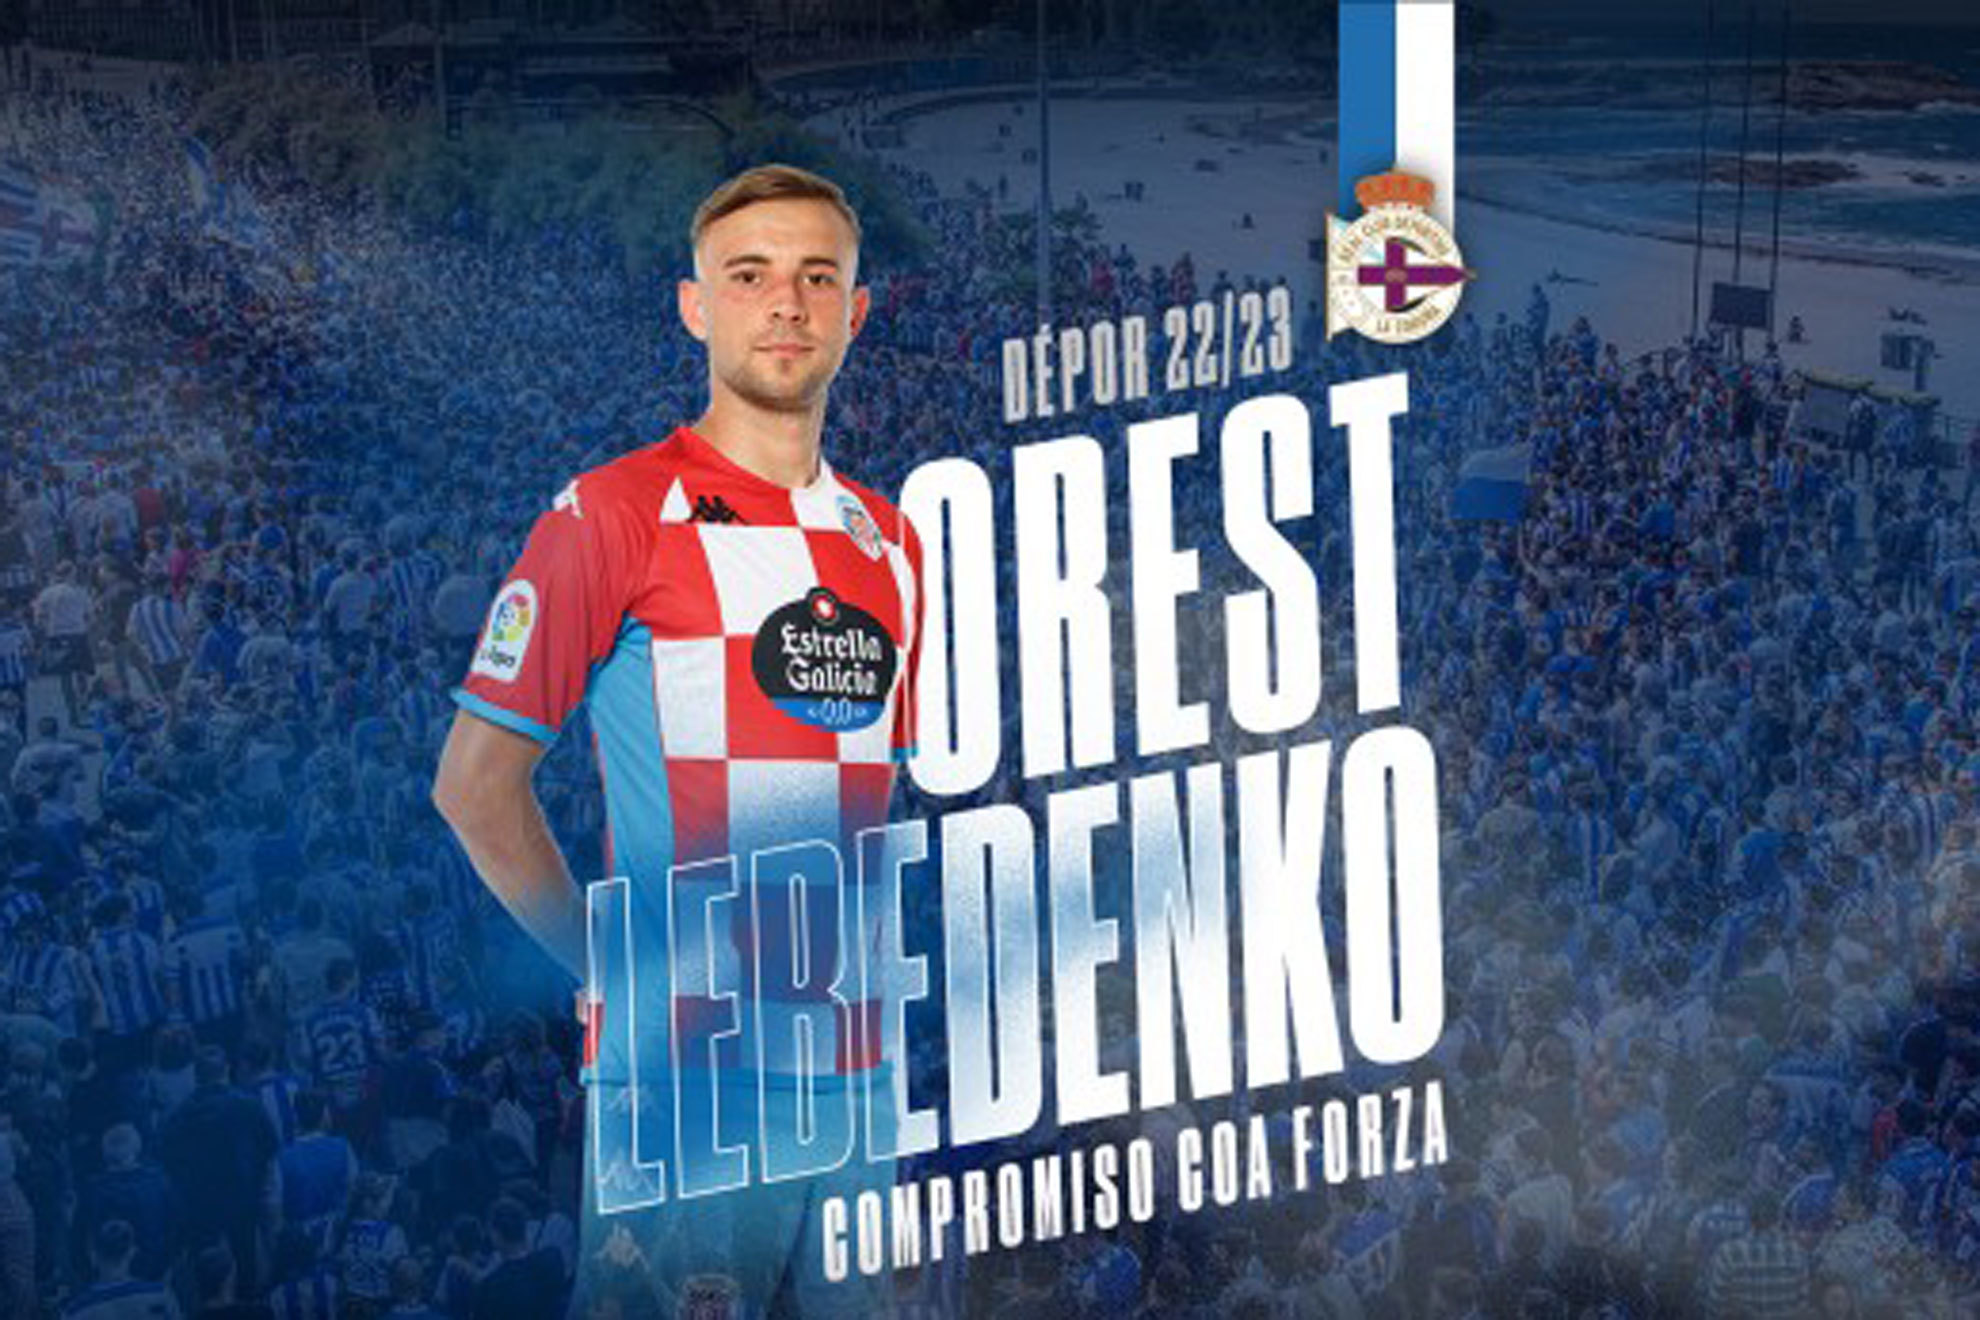 Lebedenko cambia Lugo por A Coruña